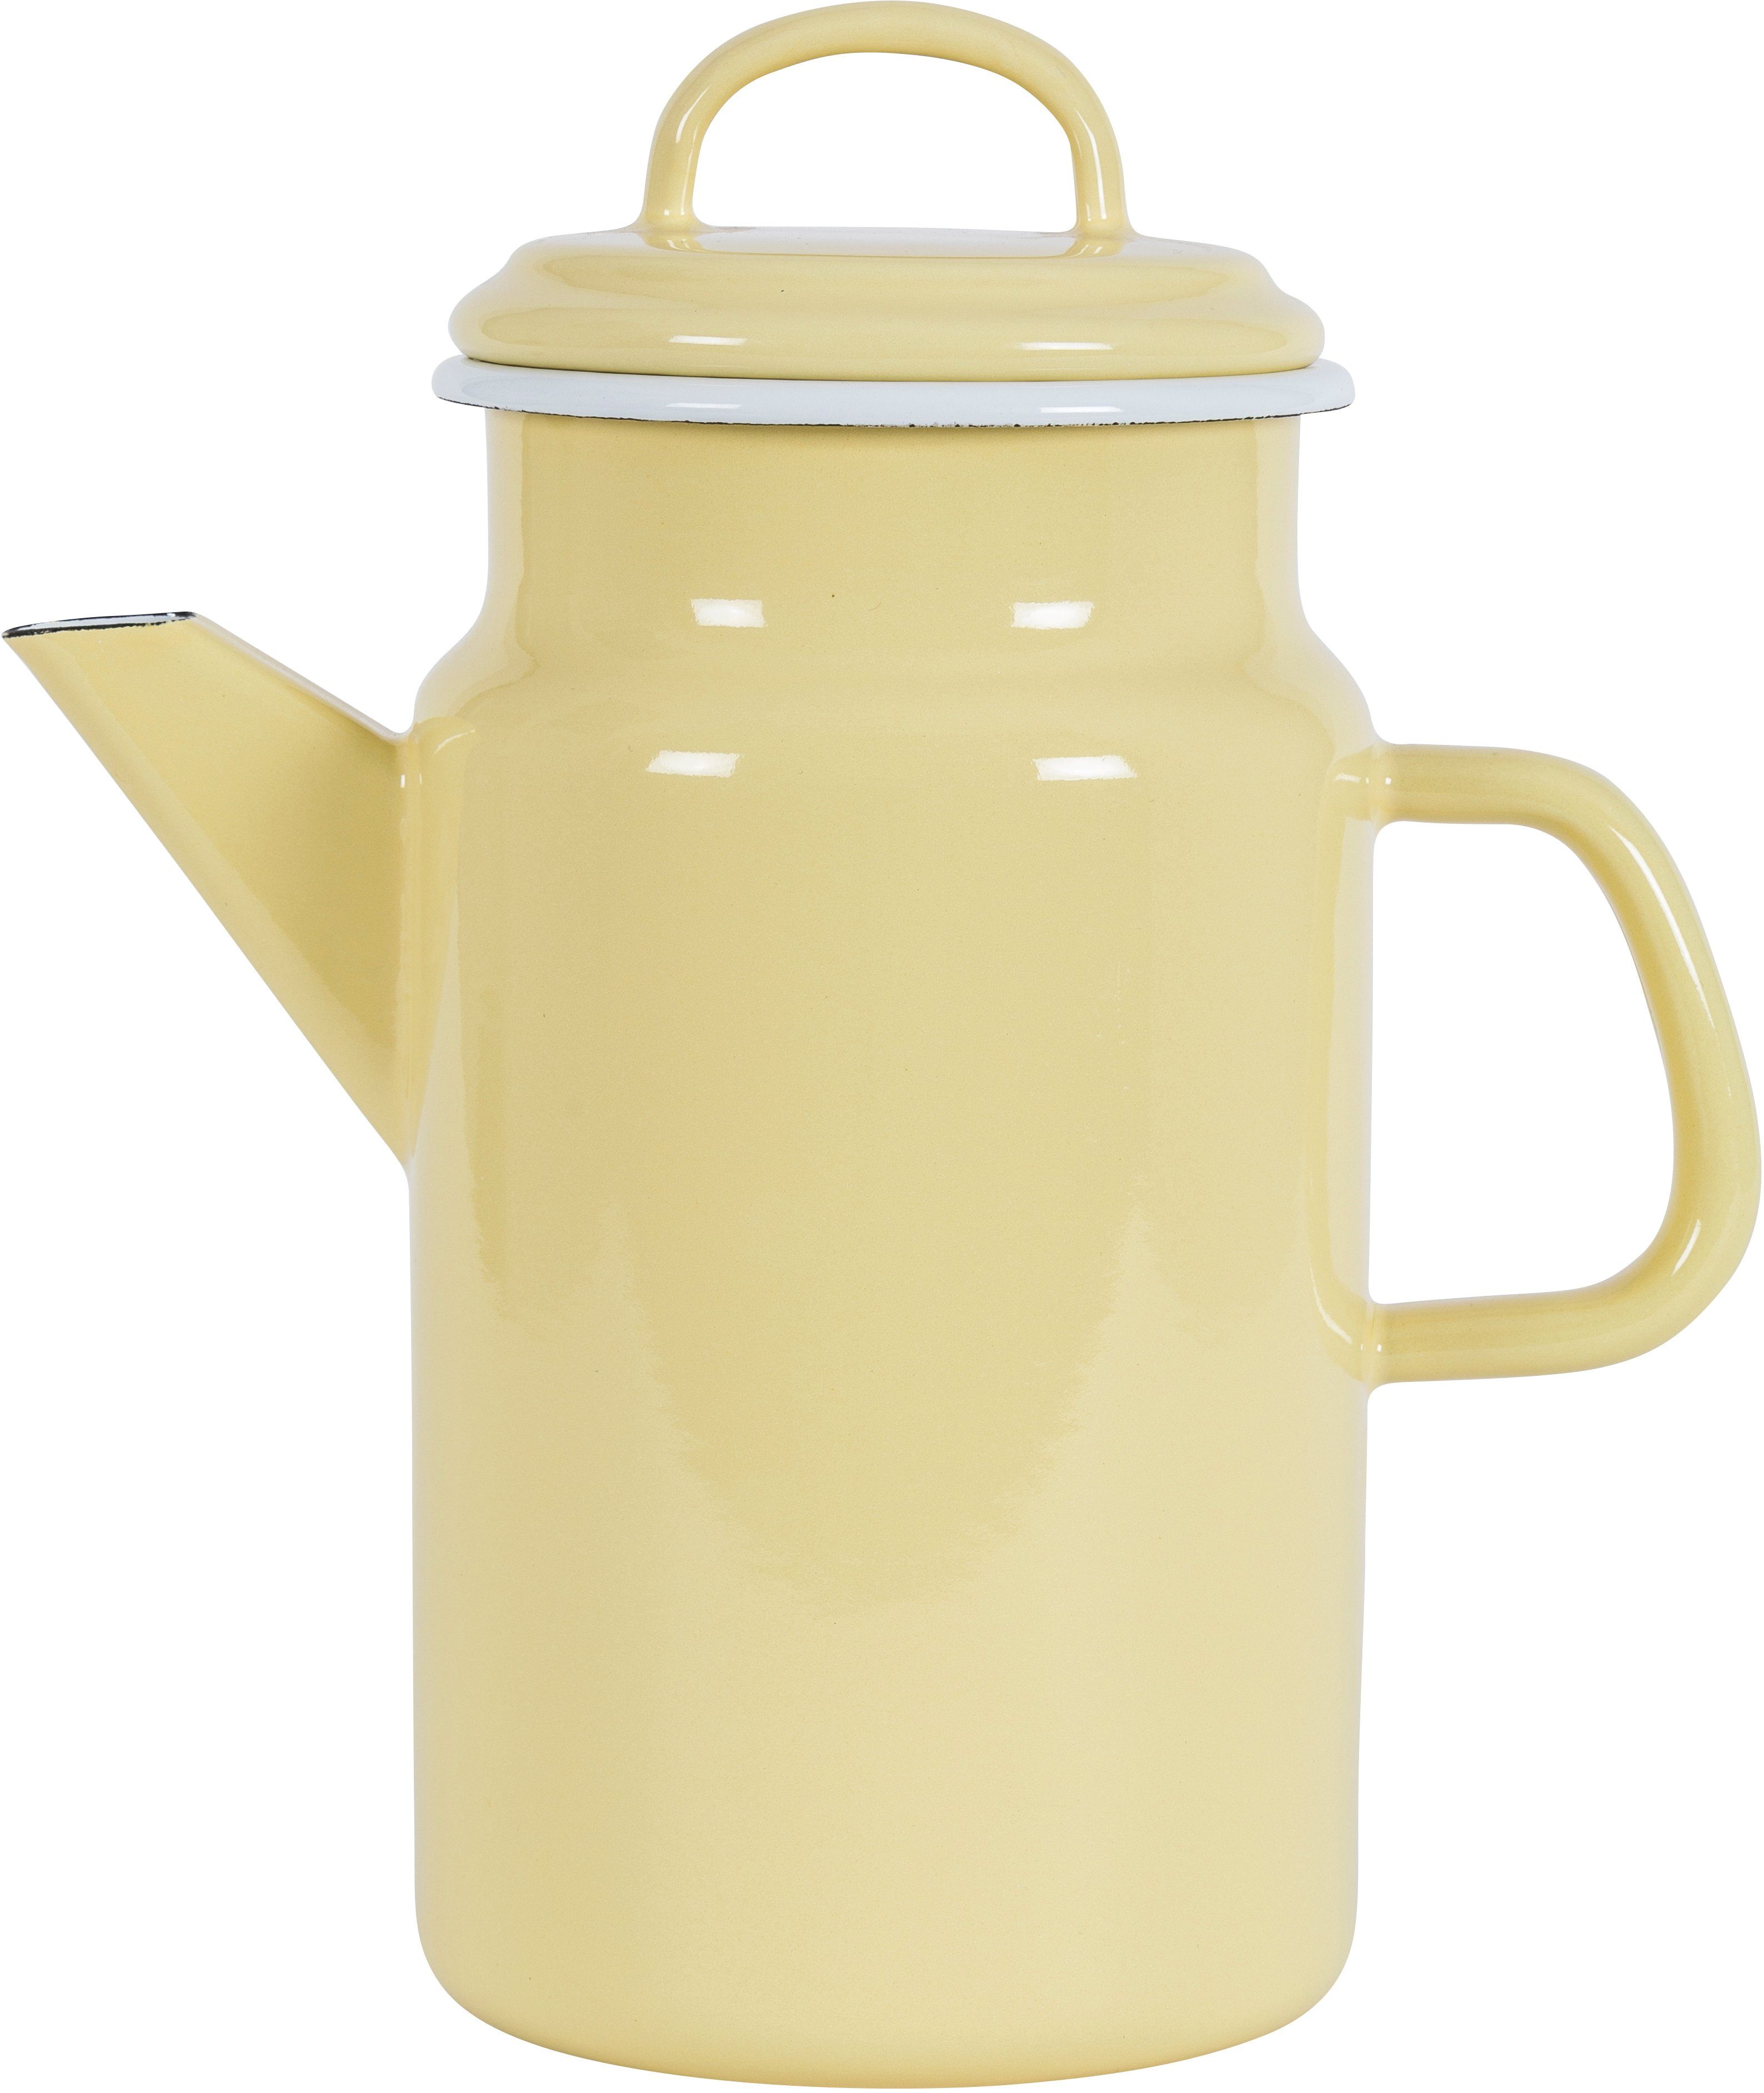 KOCKUMS® Teekanne Jernverk, 2 einer Teekanne gelb und Retro-Design vereint Emaille, in l, Nachhaltigkeit